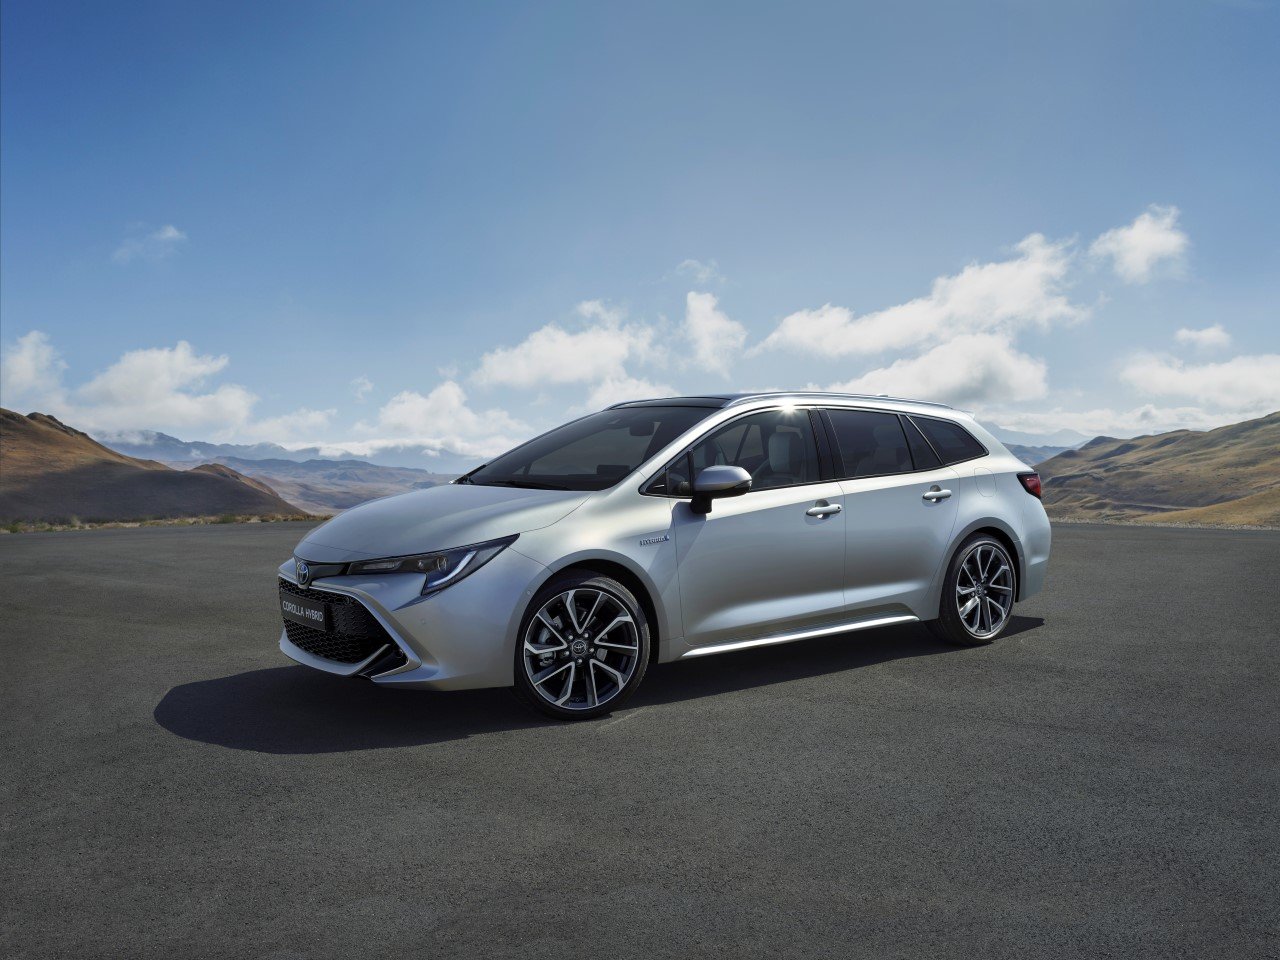 Toyota představila na pařížském autosalonu novou Corollu & Corollu Touring Sports